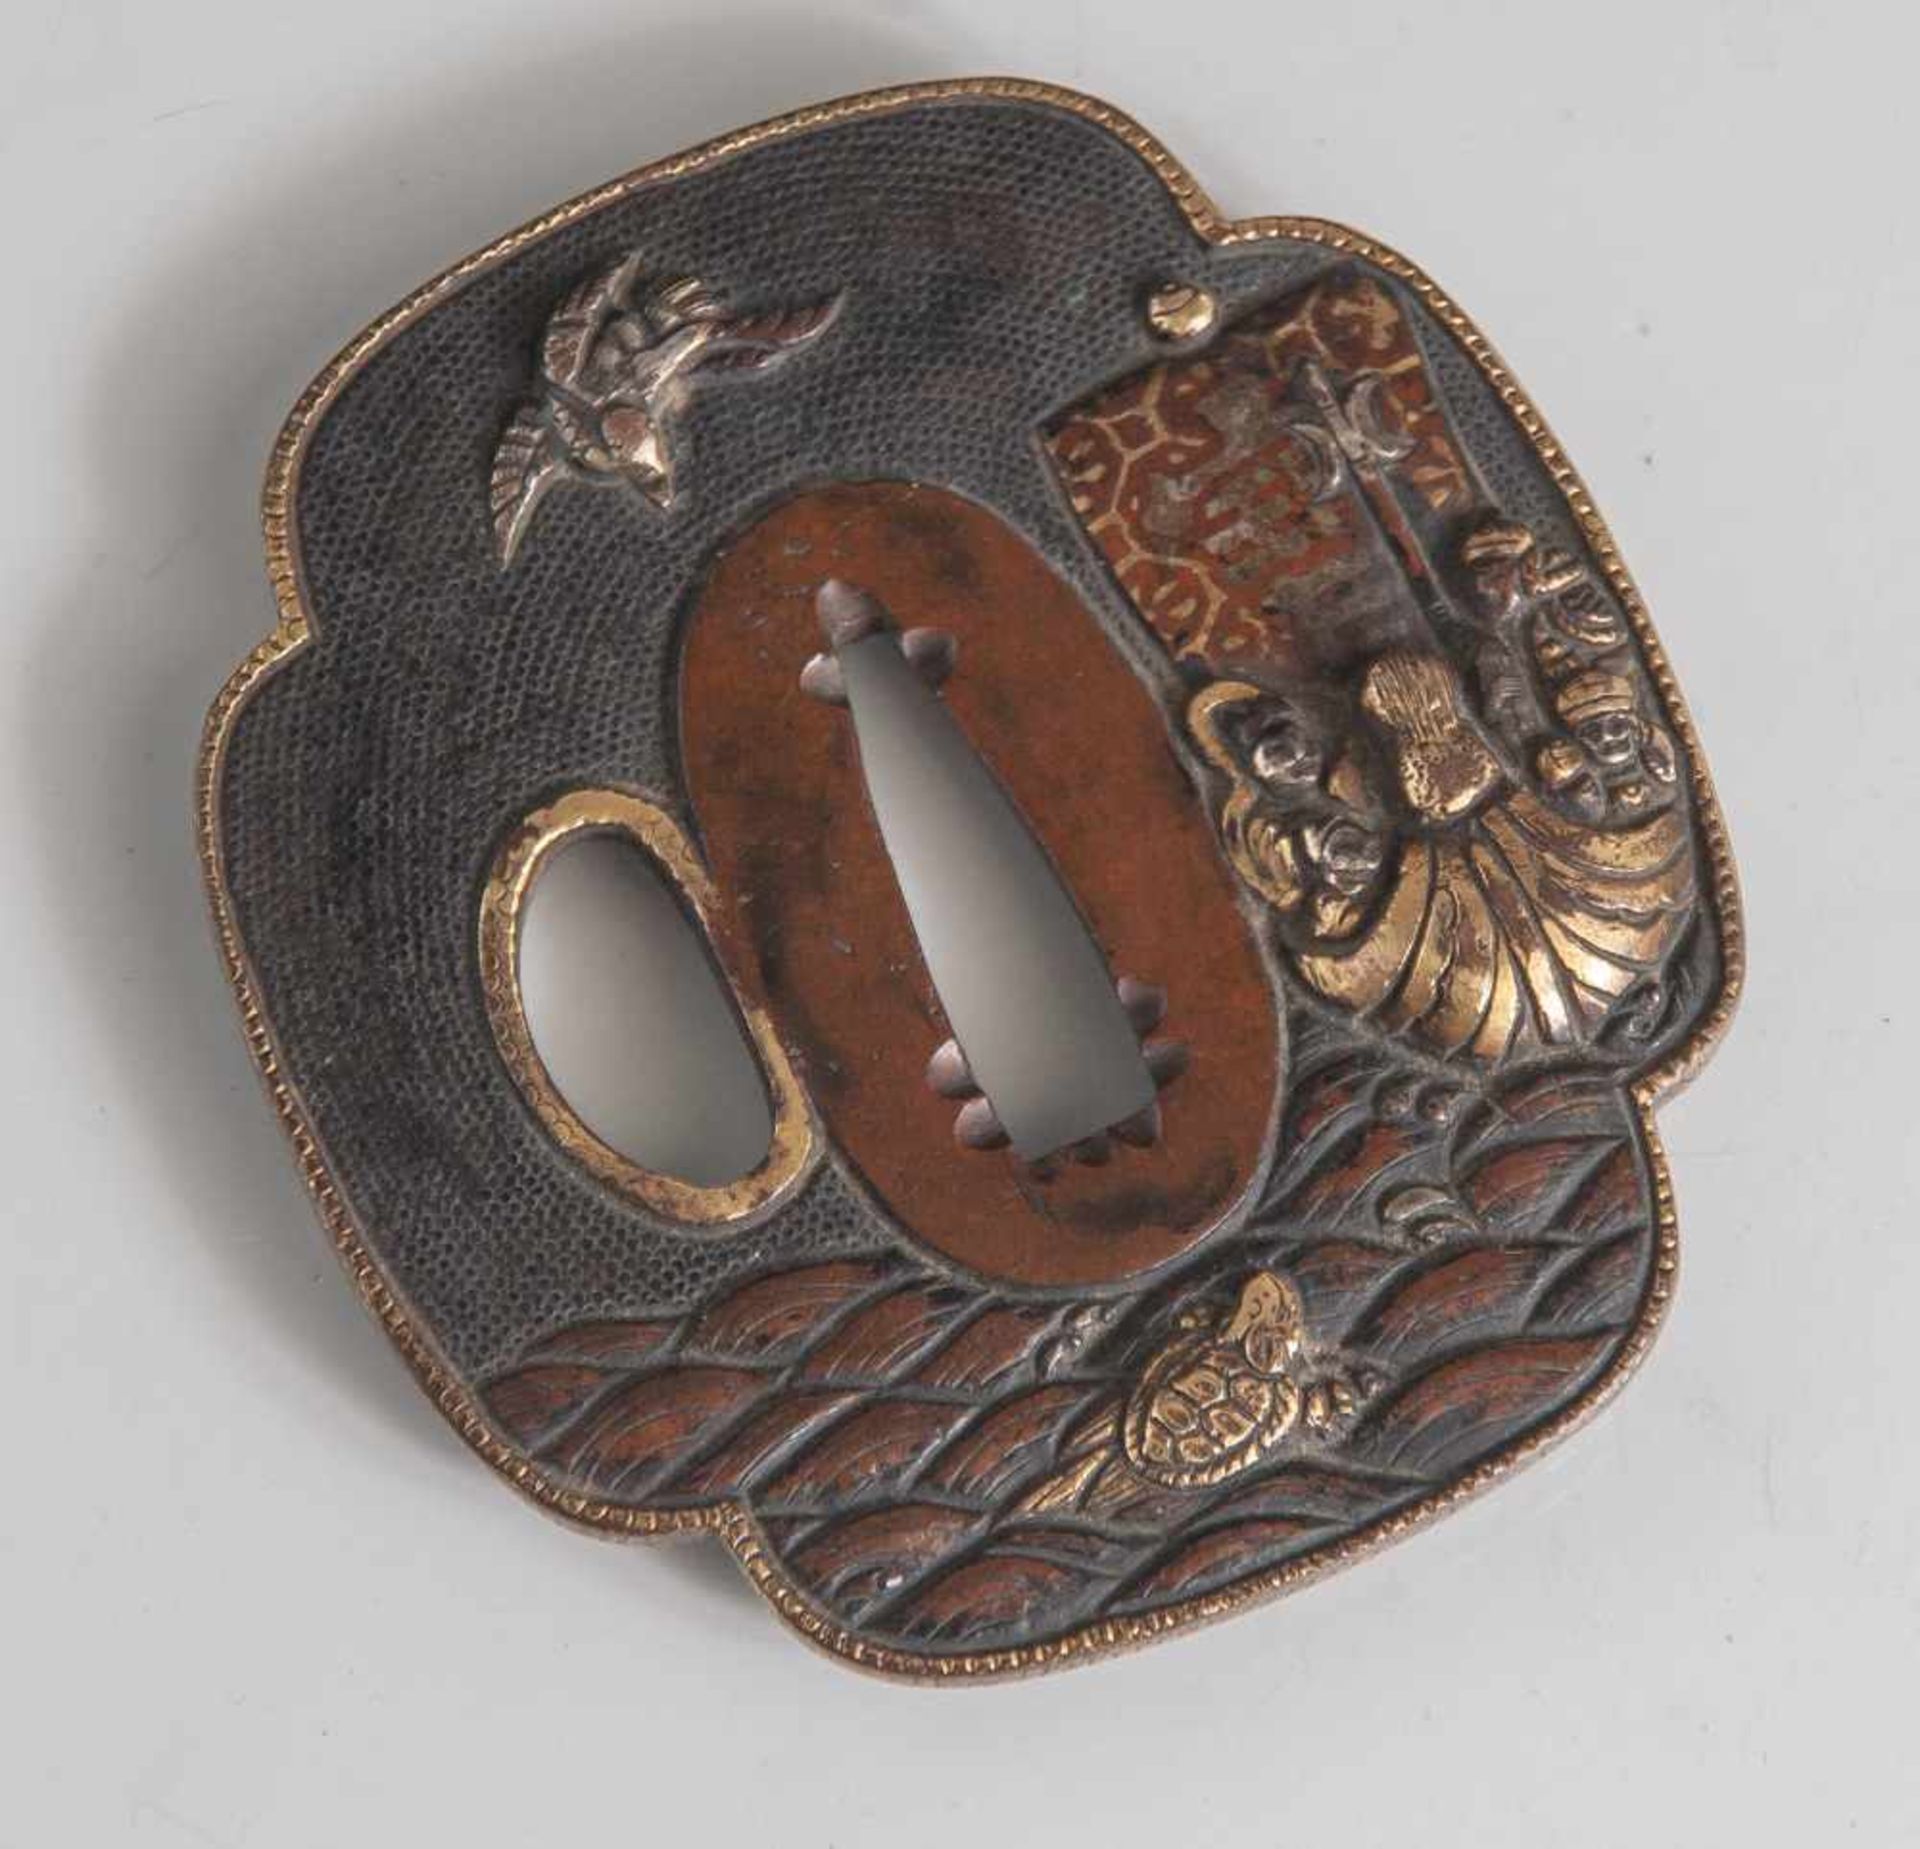 Tsuba, Japan, wohl späte Edo-Periode, Kupfer/Kupferlegierung mit Goldauflage. Dargestellt ist eine